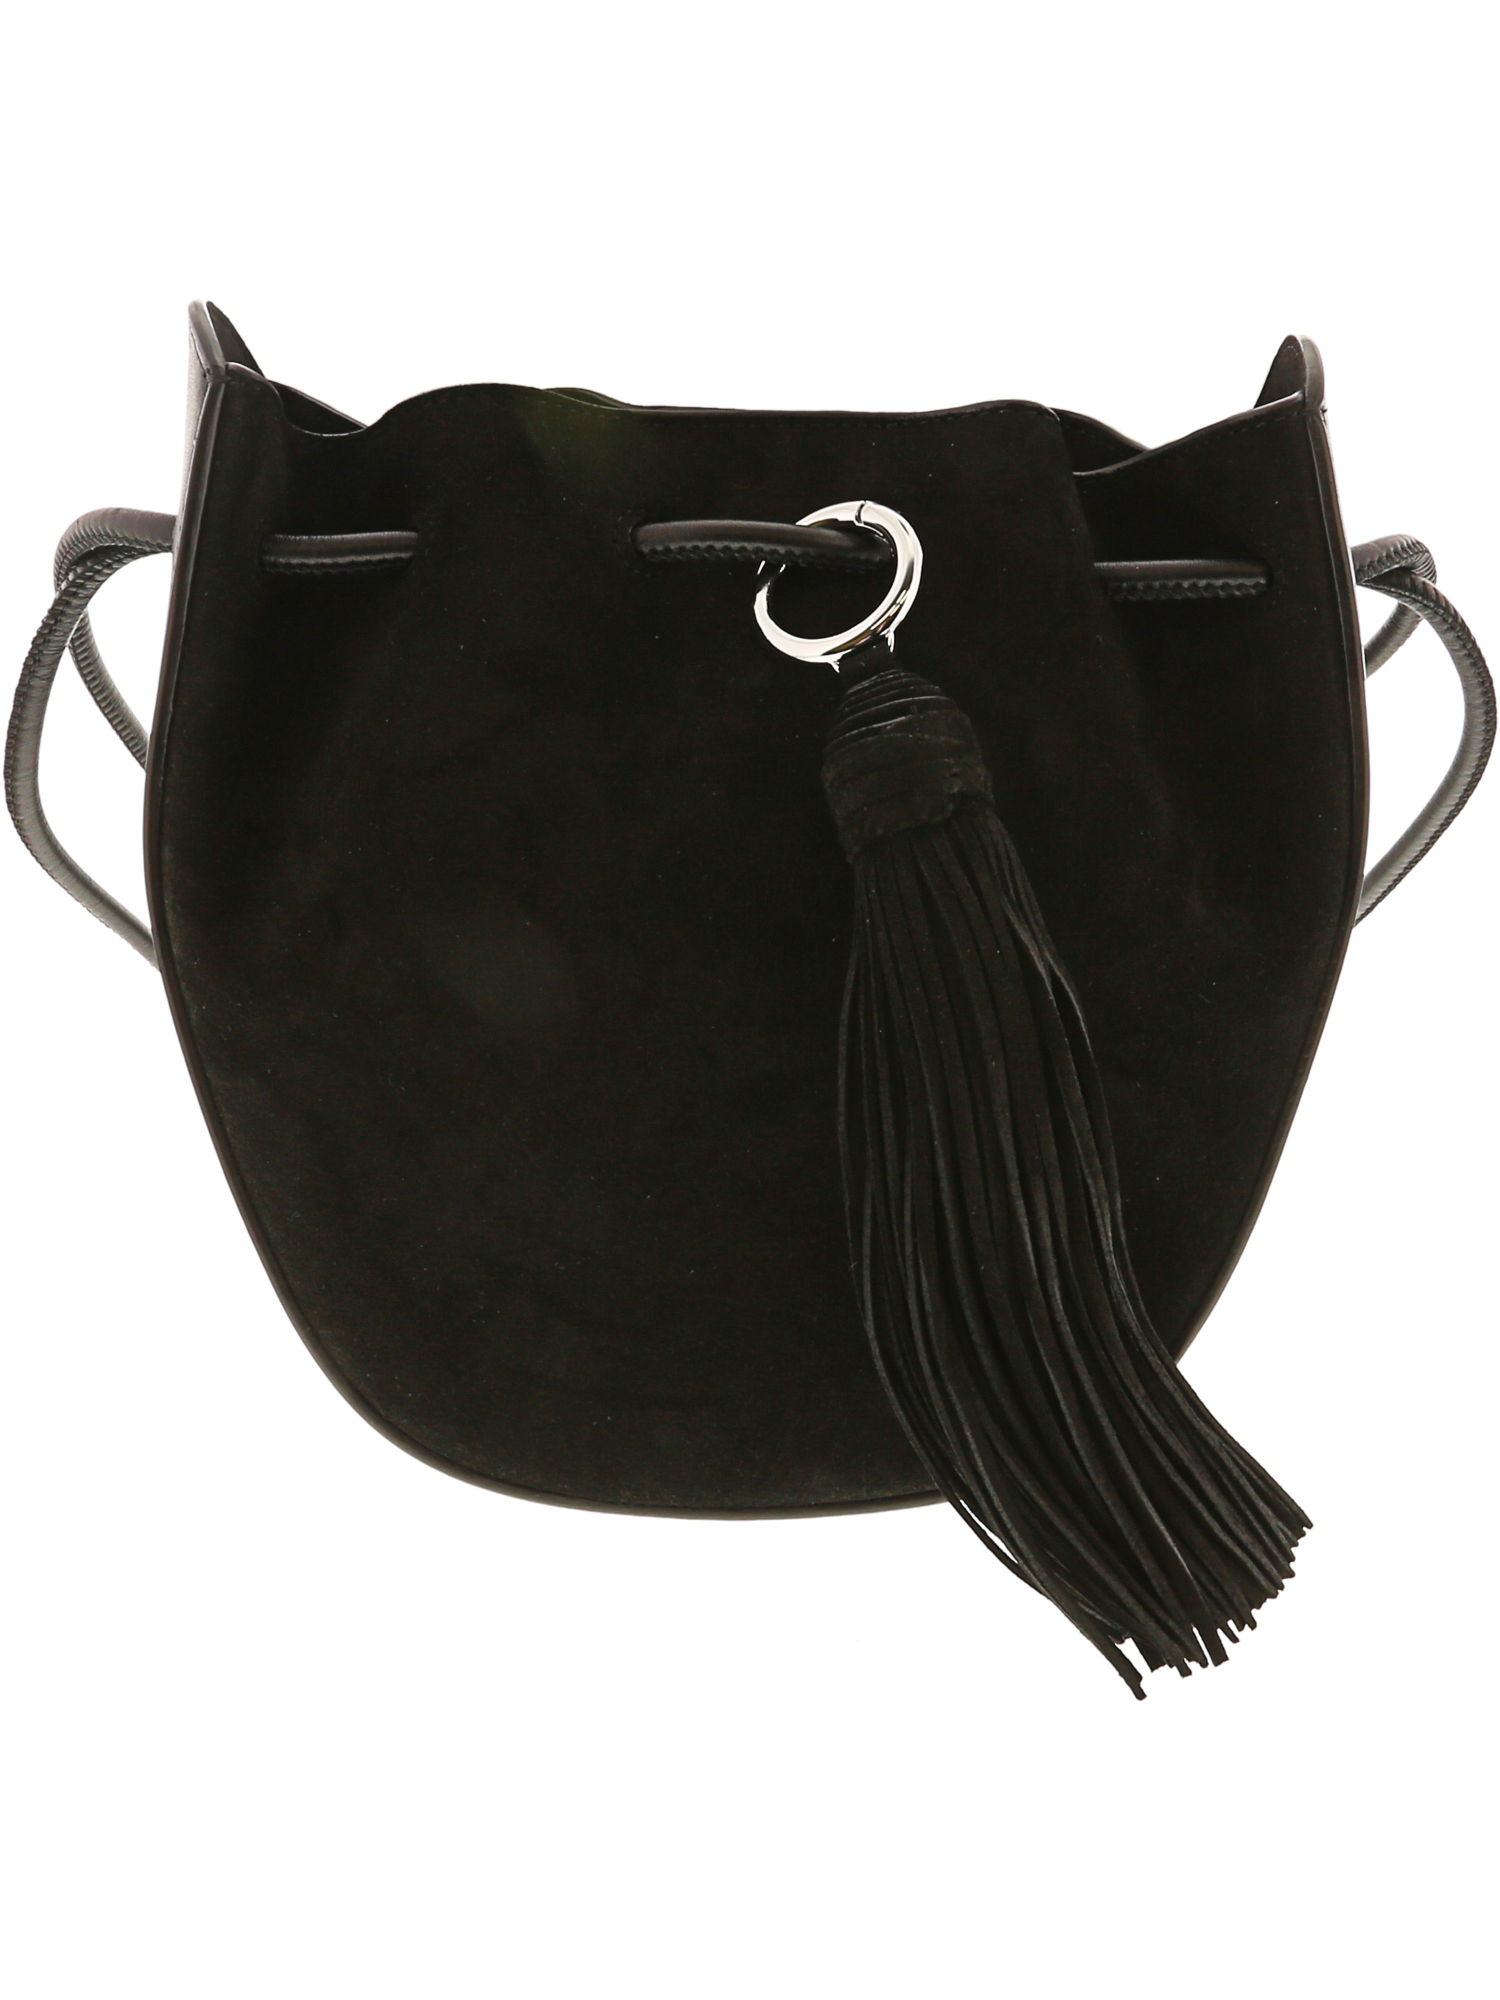 Rebecca Minkoff Women's Lulu Crossbody Leather Cross Body Bag | eBay